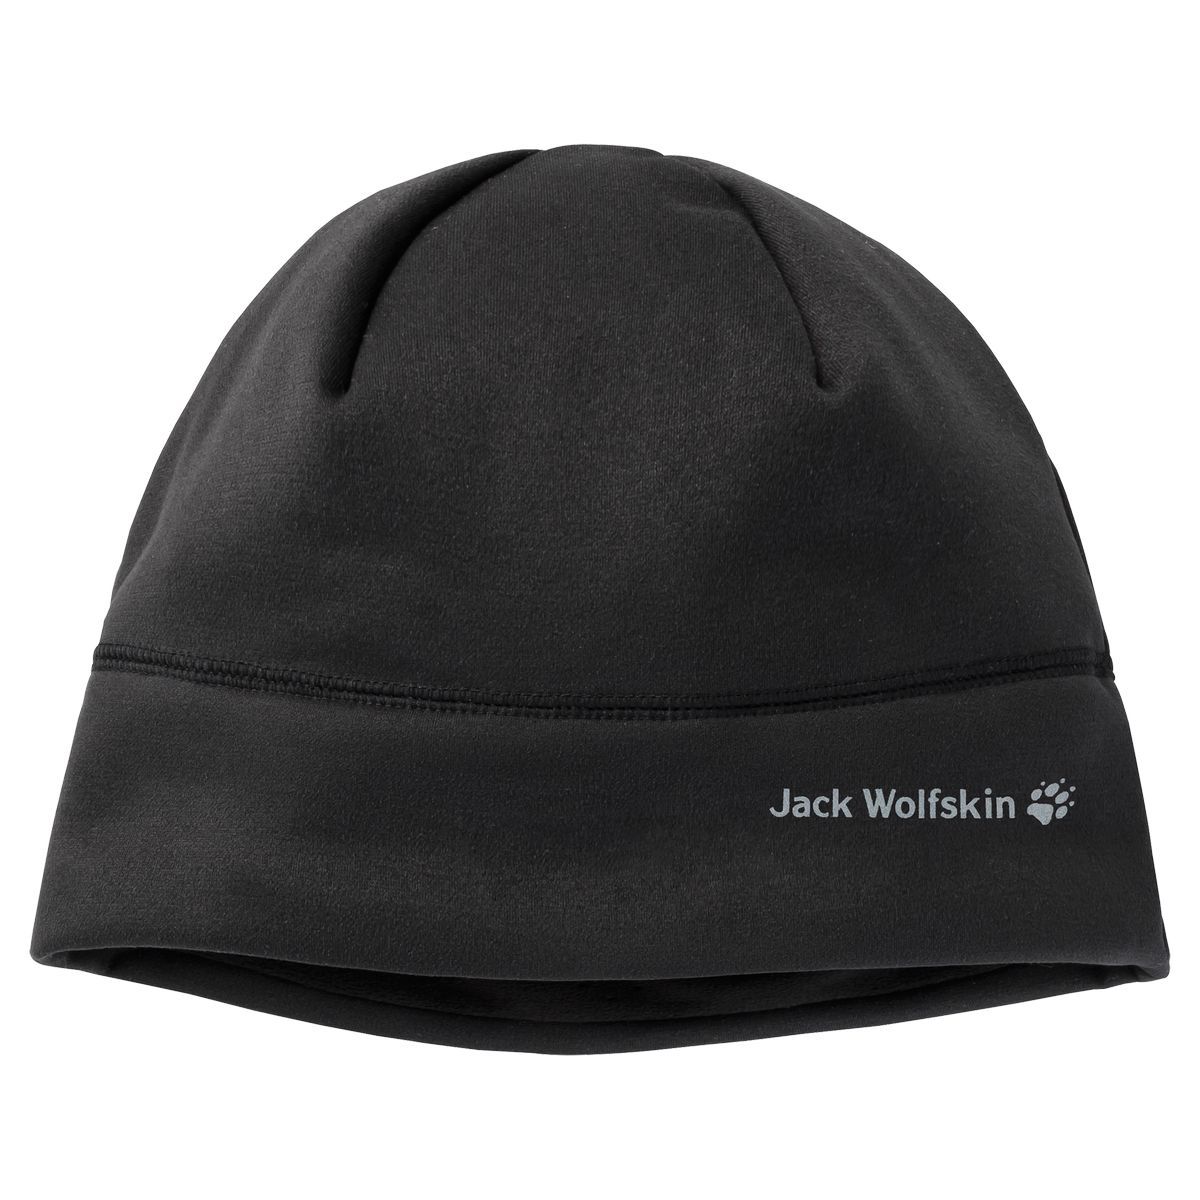 Jack Wolfskin Stormlock Hydro II CAP Mütze